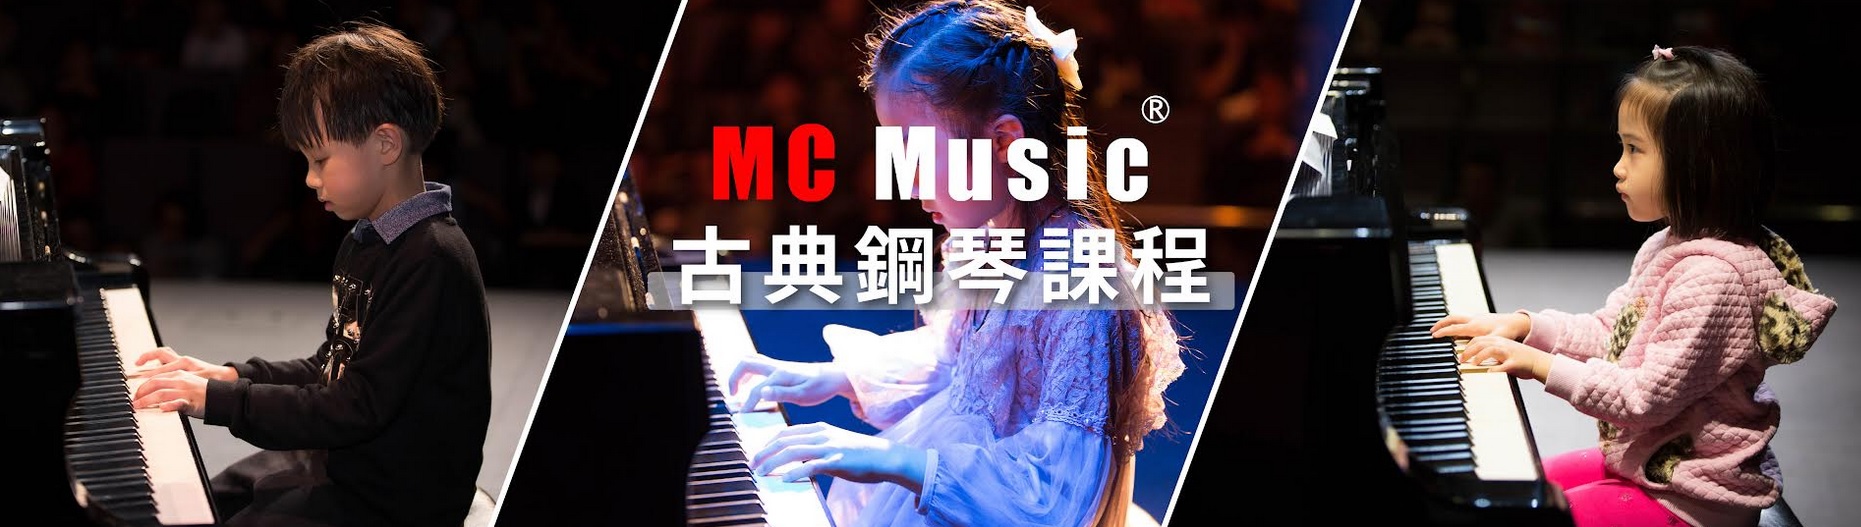 MC Music 美斯音樂-流行鋼琴課程,鋼琴課程,彈琴學琴推介,分校遍佈全港